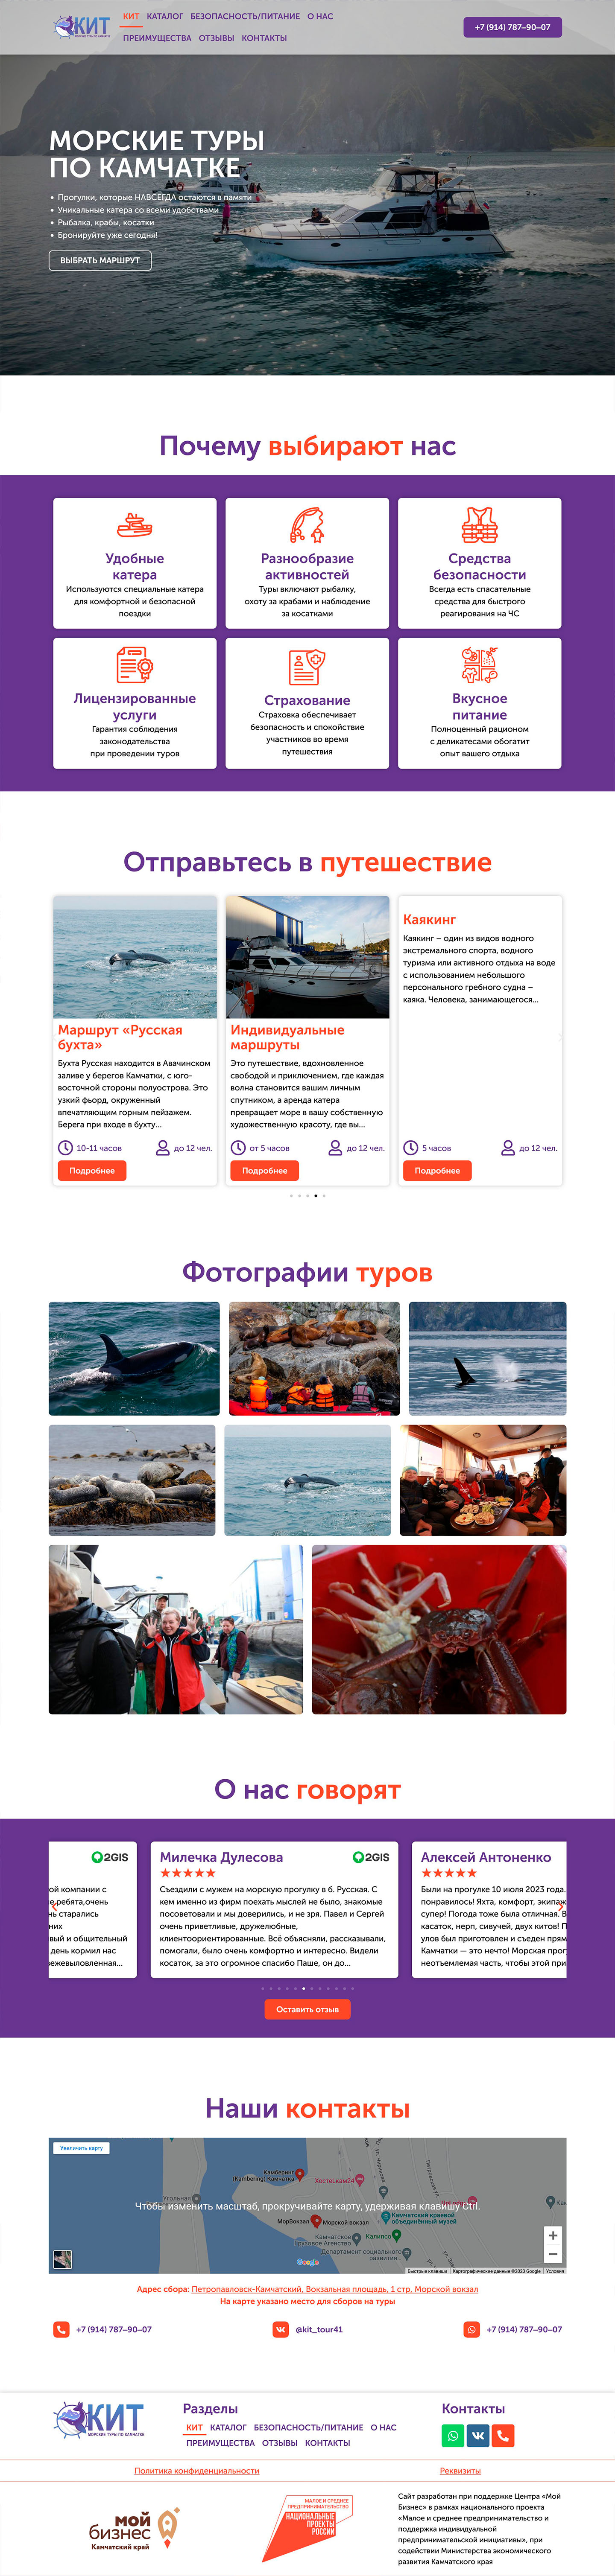 glavnaja-kit-morskie-tury-po-kamchatke